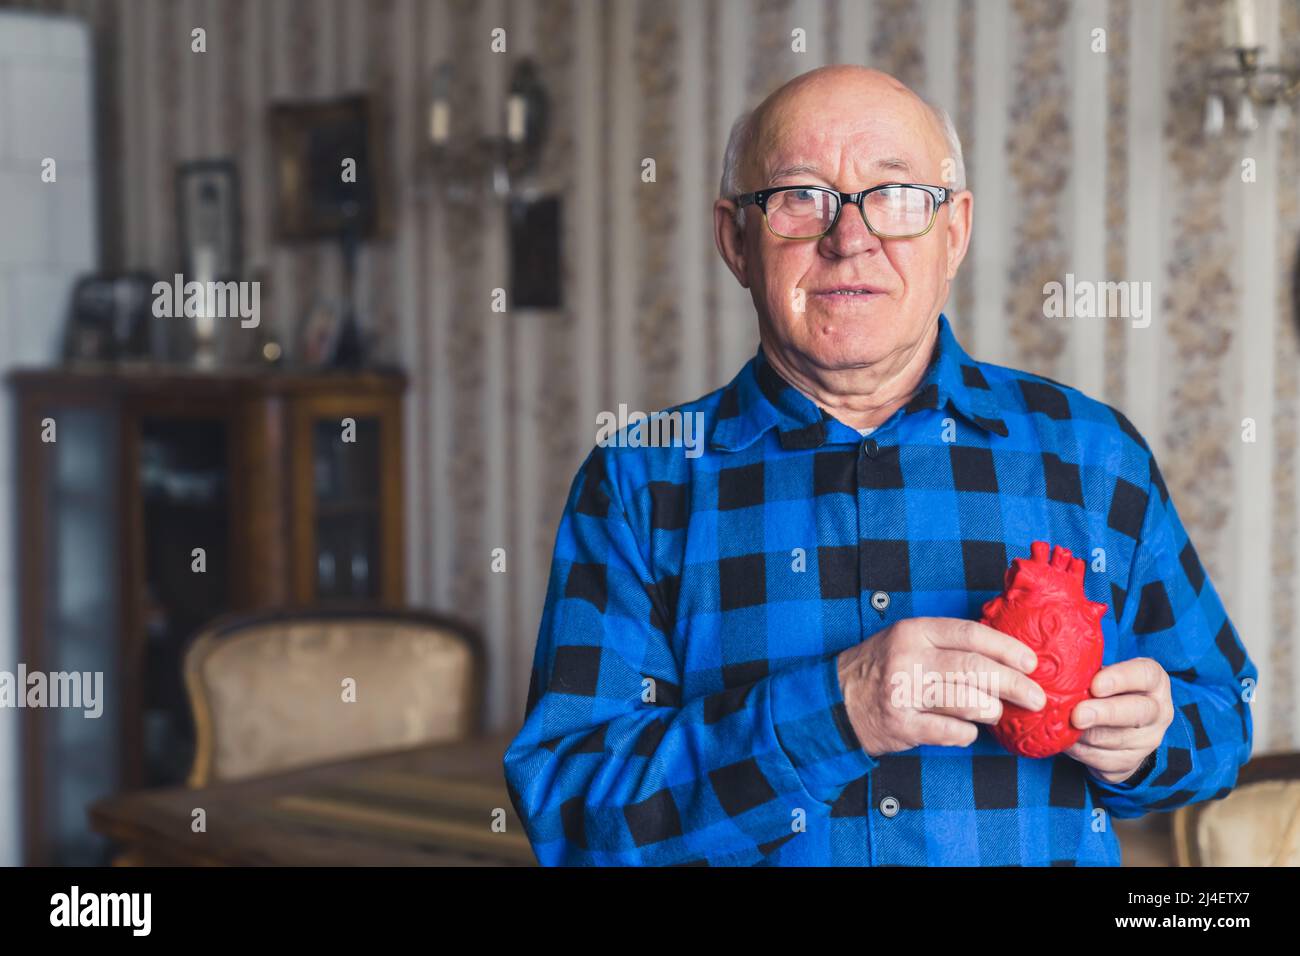 Homme âgé d'Europe chauve senior en chemise en flanelle bleue tenant un  faux coeur artificiel devant sa poitrine. Intérieur à l'ancienne en  arrière-plan. Concept de soins de santé. Photo de haute qualité